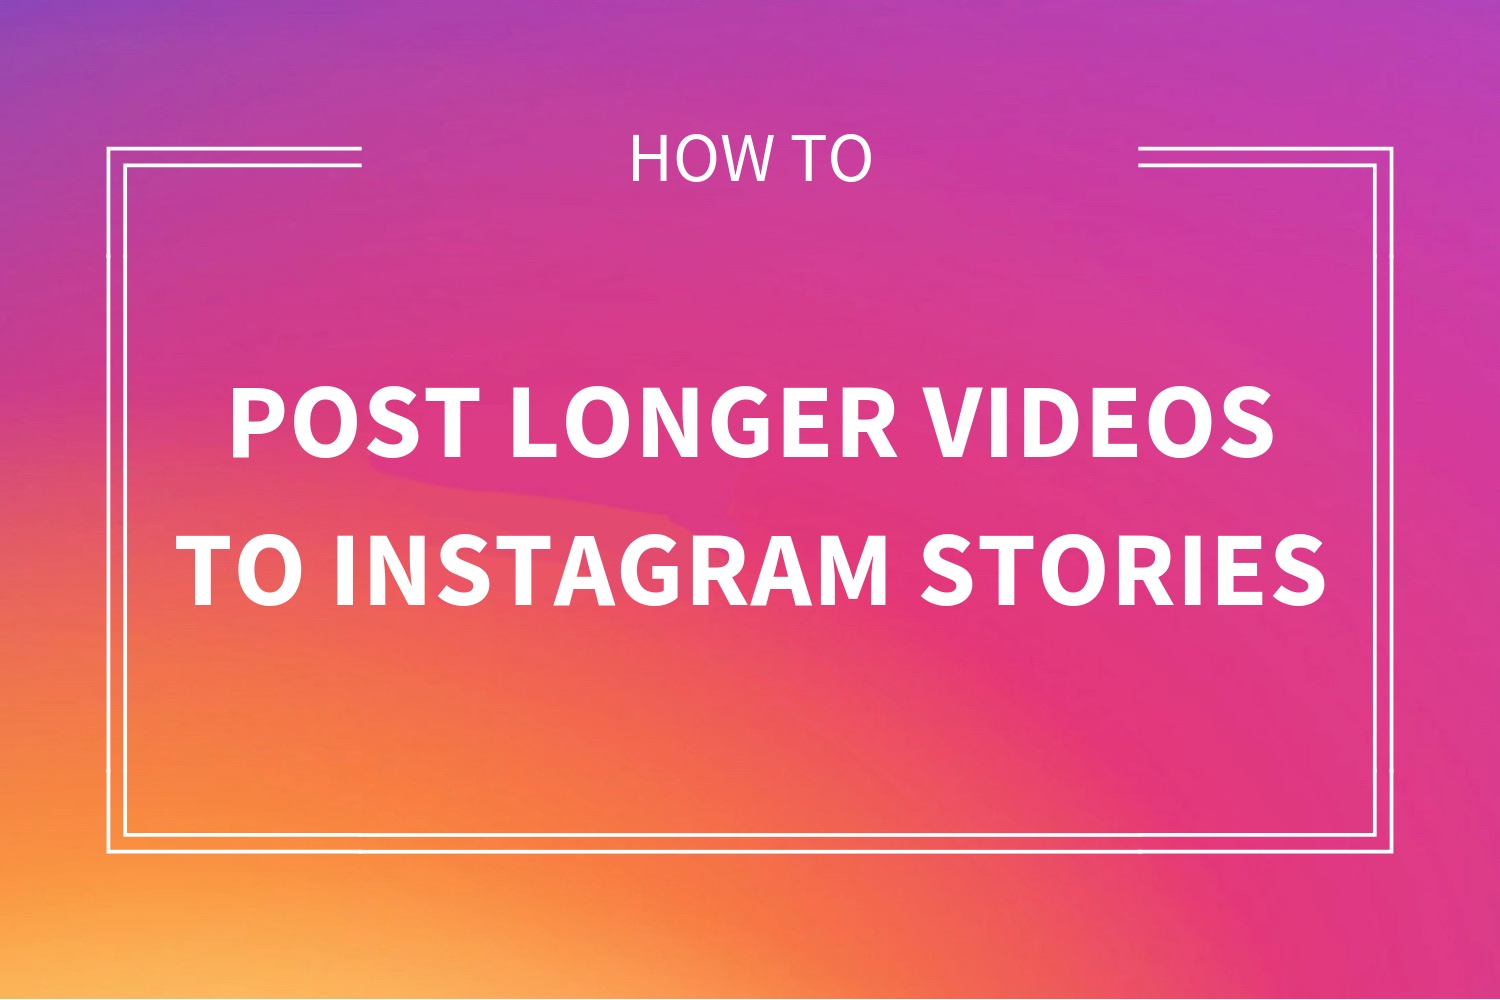 Pubblica video lunghi sulla storia di Instagram